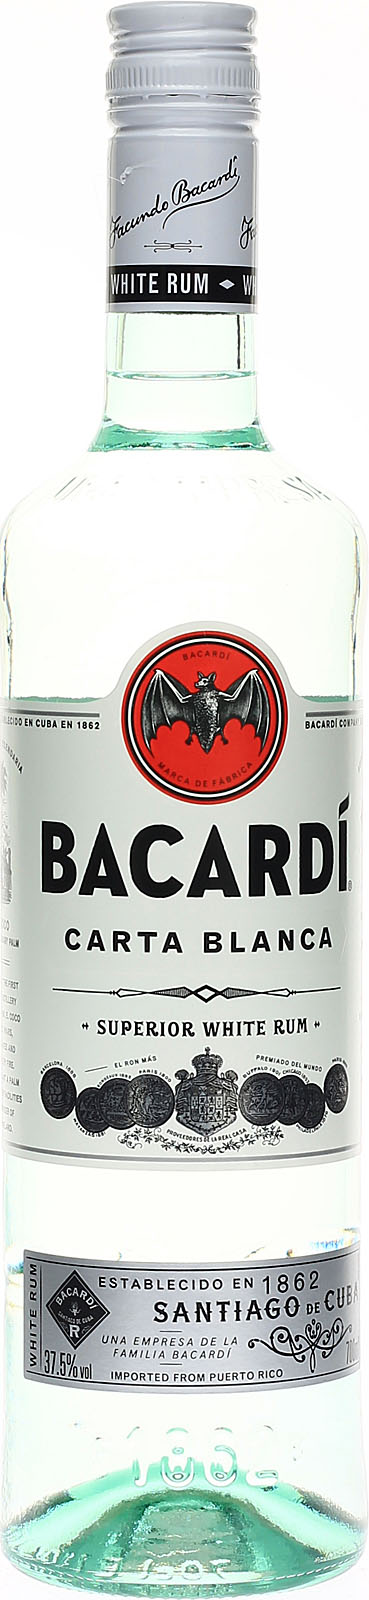 Bacardi Carta Blanca - Der White Rum als 0,7 Liter-Flas